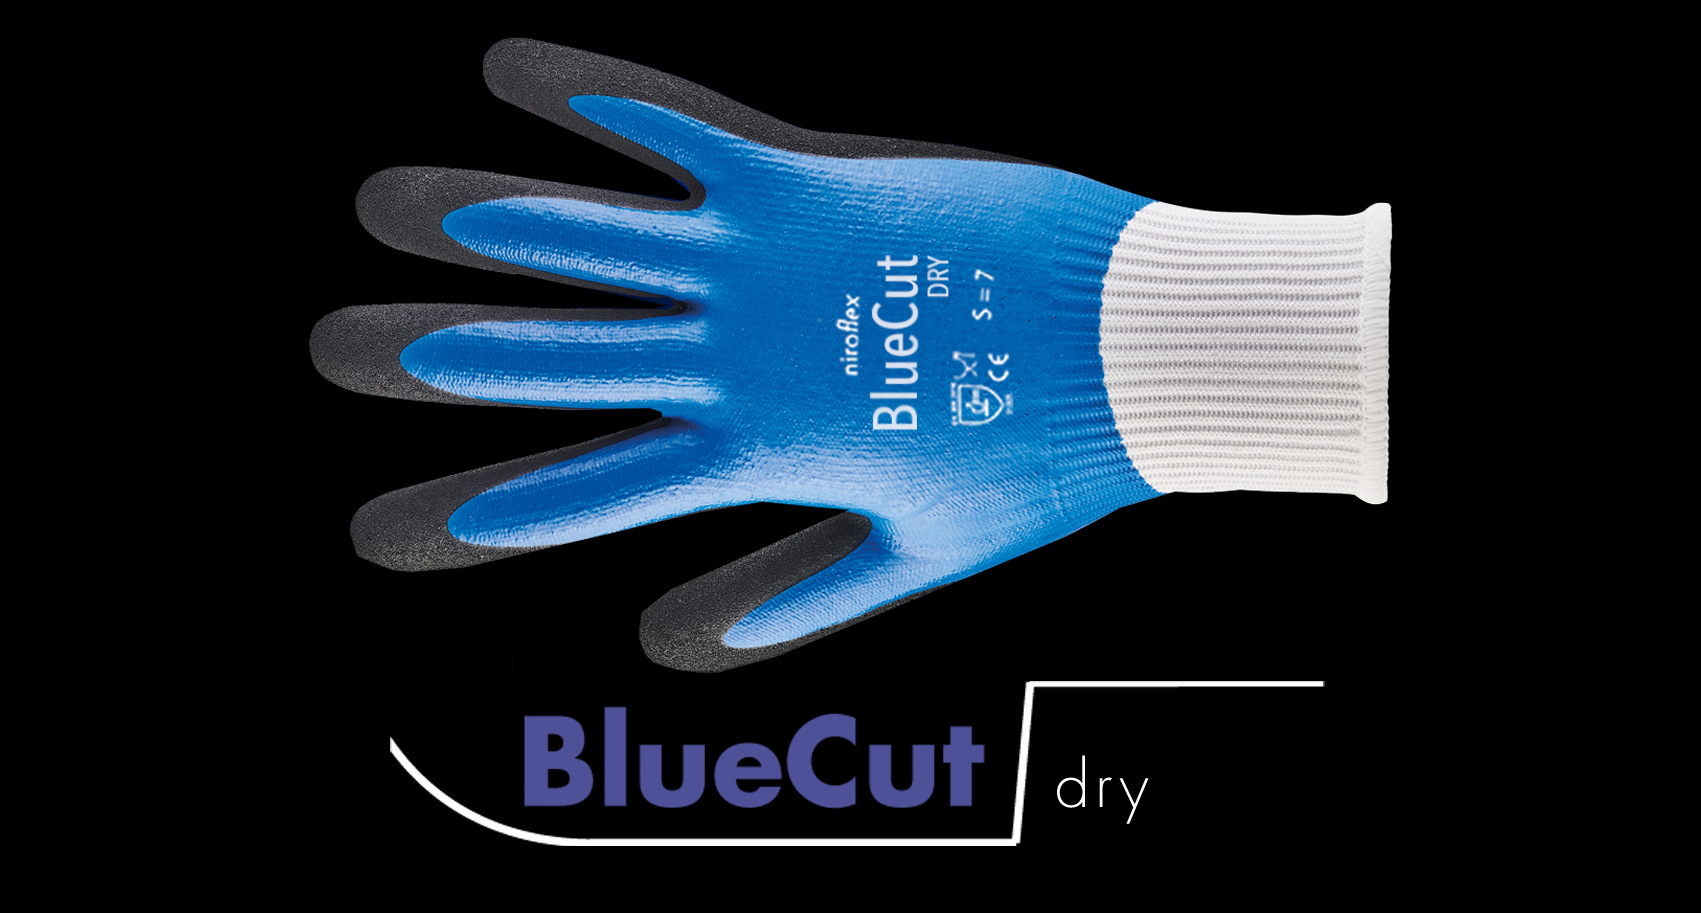 BlueCut dry /BlueCut pro / armguard / lite / lite x